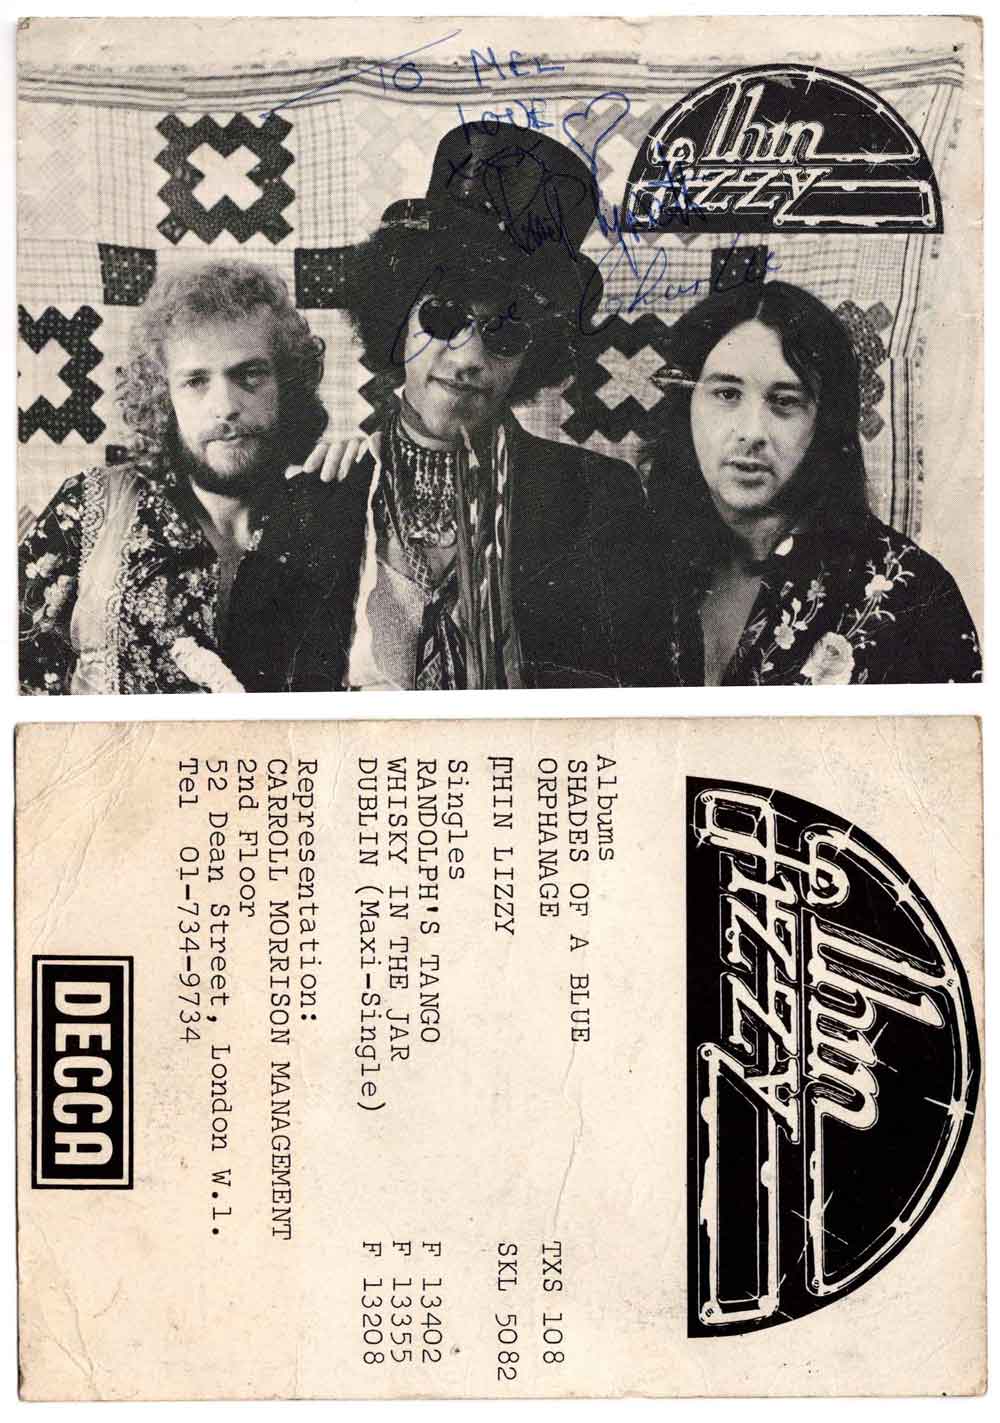 Utopia Elsloo 15.09.1973 Thin Lizzy foto met handtekeningen